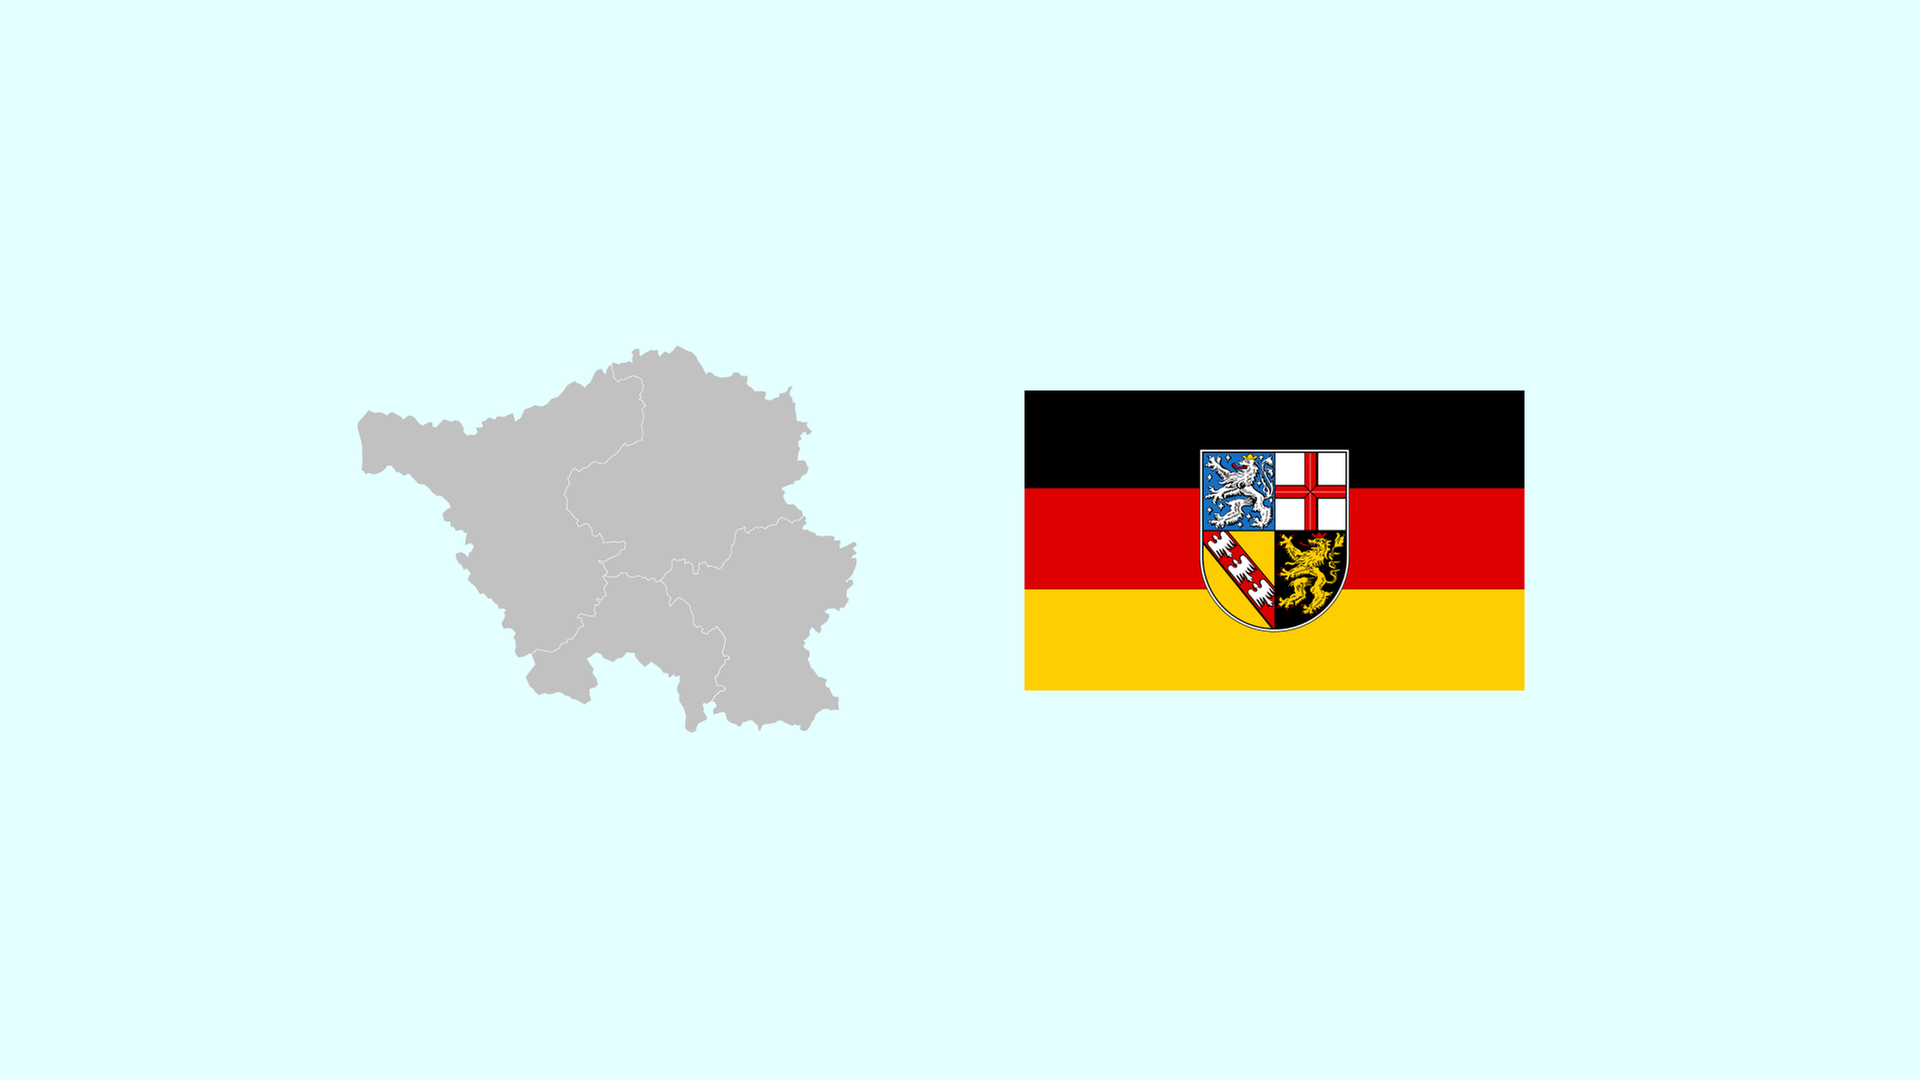 Wahlkreise und Flagge von Saarland